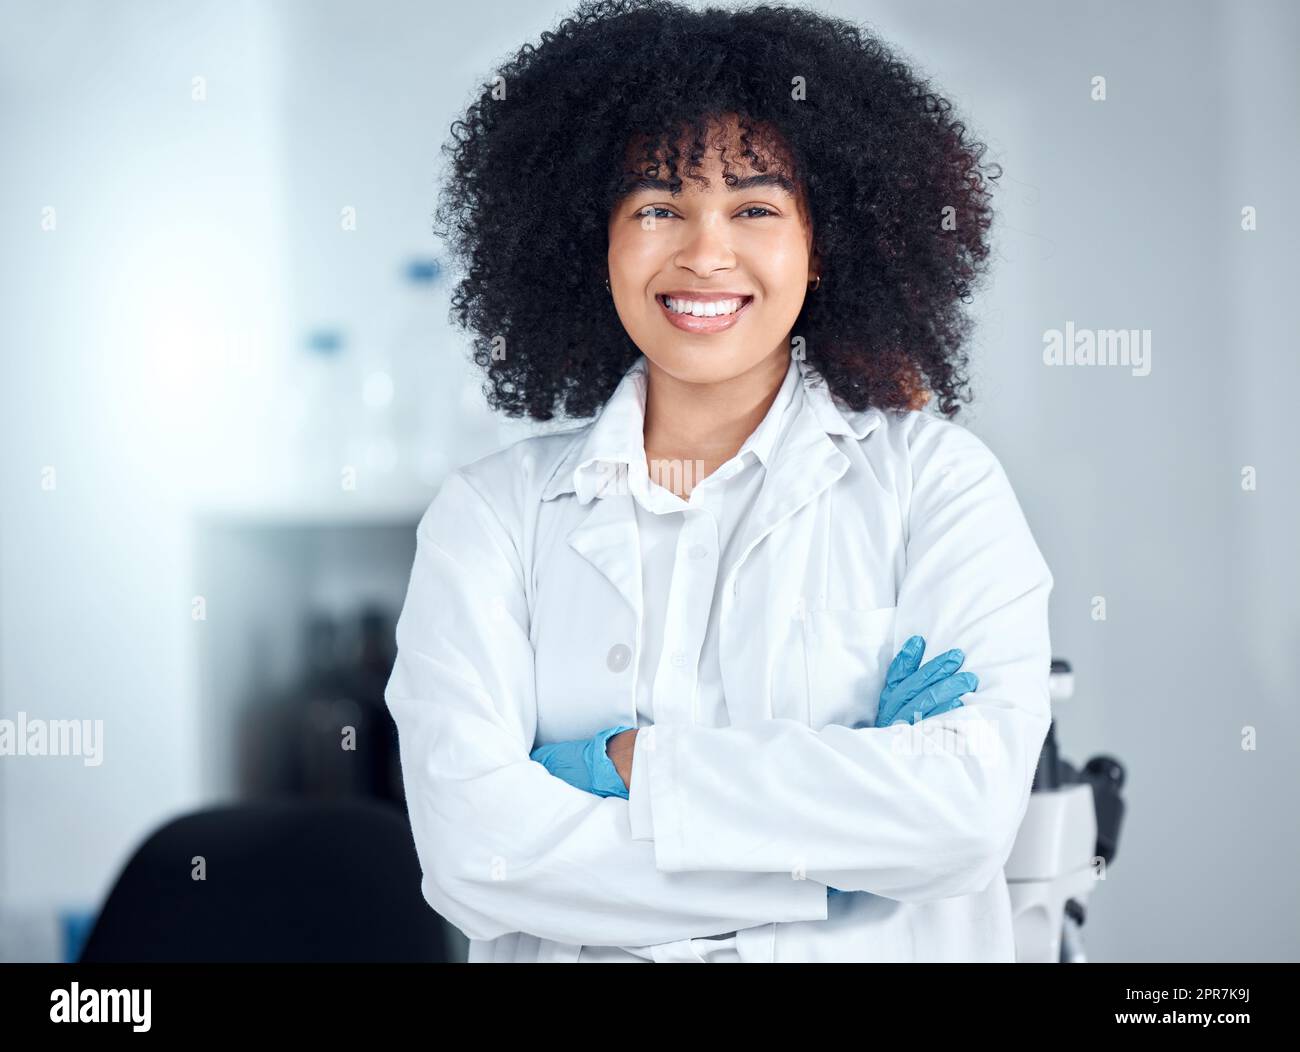 Portrait d'une belle jeune femme afro-américaine avec un afro portant un manteau et des gants tout en se tenant debout avec ses bras croisés dans le laboratoire. Une femme scientifique de race mixte souriant joyeusement Banque D'Images